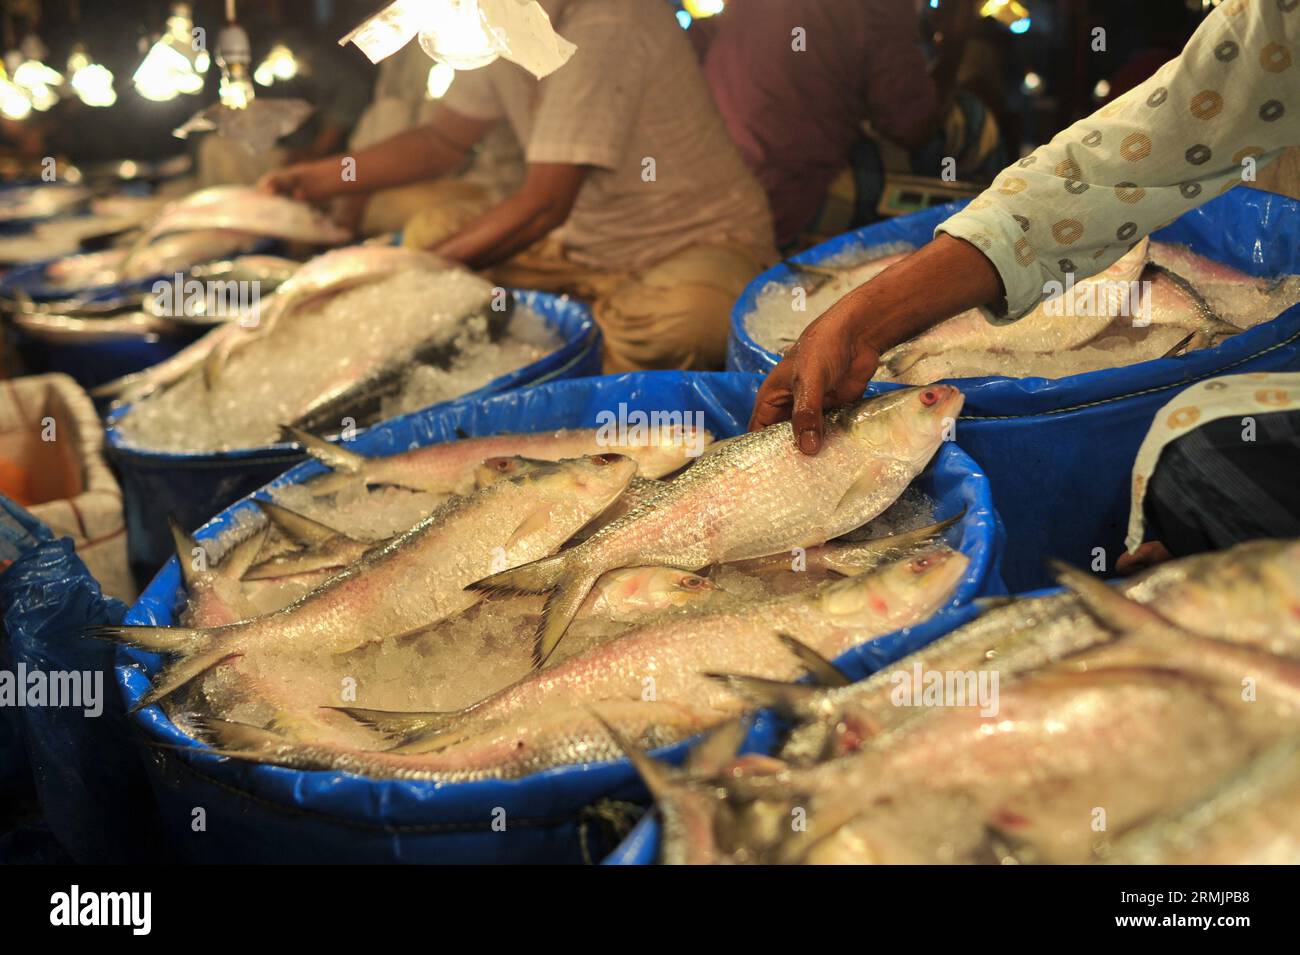 Die Menschen kaufen Hilsa-Fisch auf dem Lalbazar-Fischmarkt in Sylhet. Obwohl in letzter Zeit in den Flussmündungen und Meeren eine große Menge HILSA-Fisch von Fischern gefangen wurde, wird HILSA-Fisch immer noch zu hohen Preisen von 1500-2000 Taka pro kg verkauft. Man fragt sich, warum der Nationalfisch von Bangladesch, der ganz natürlich angebaut wird, so teuer ist. Sylhet, Bangladesch. Stockfoto